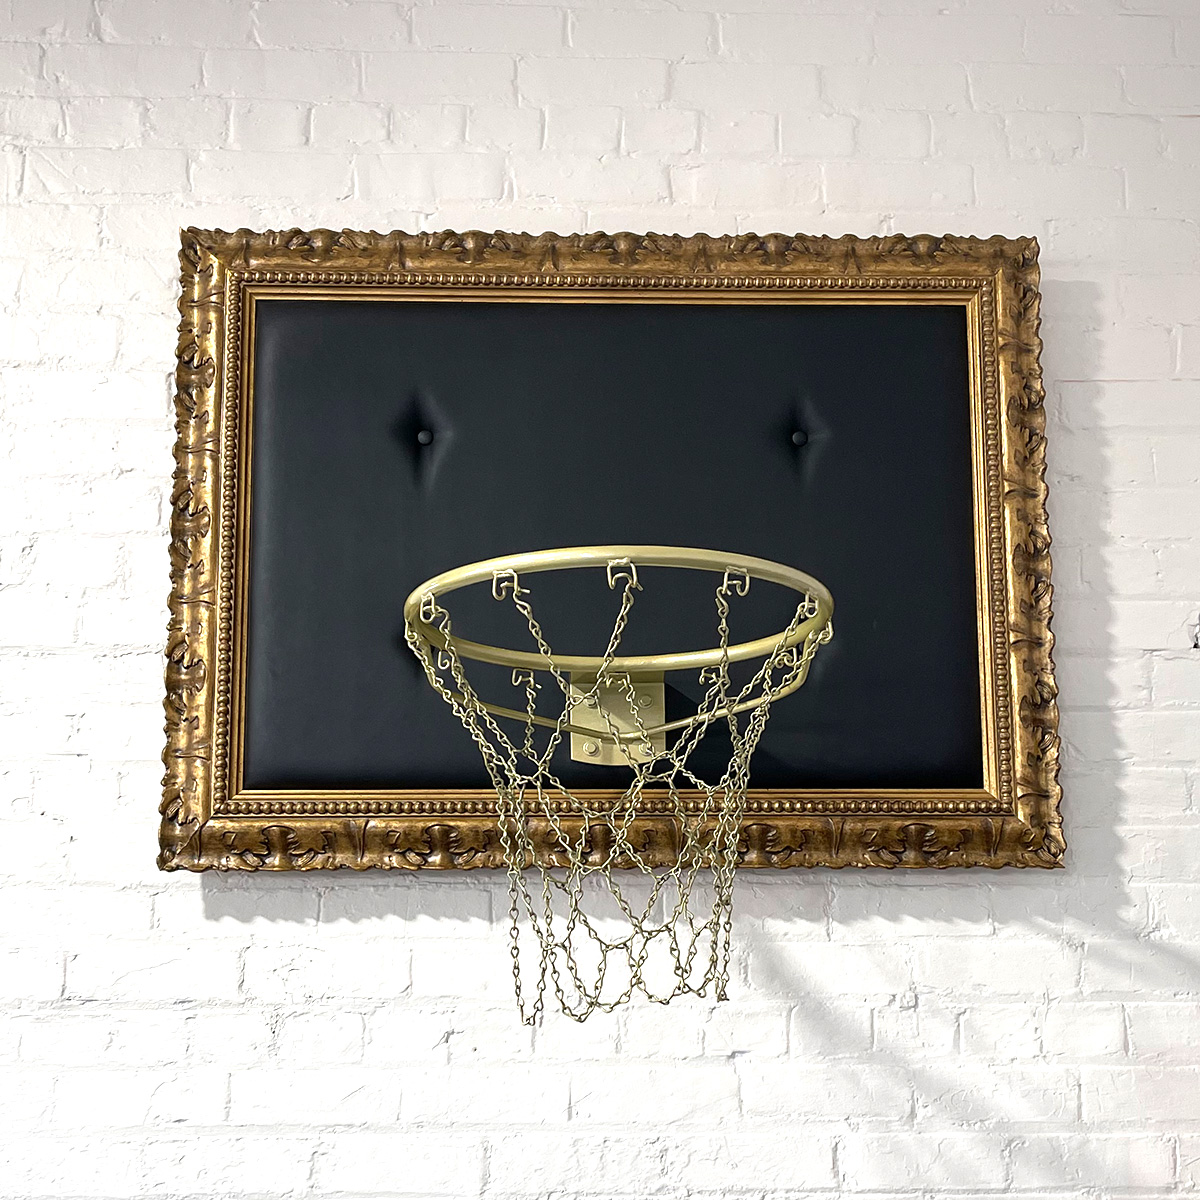 Hoop framed with ornate gold frame